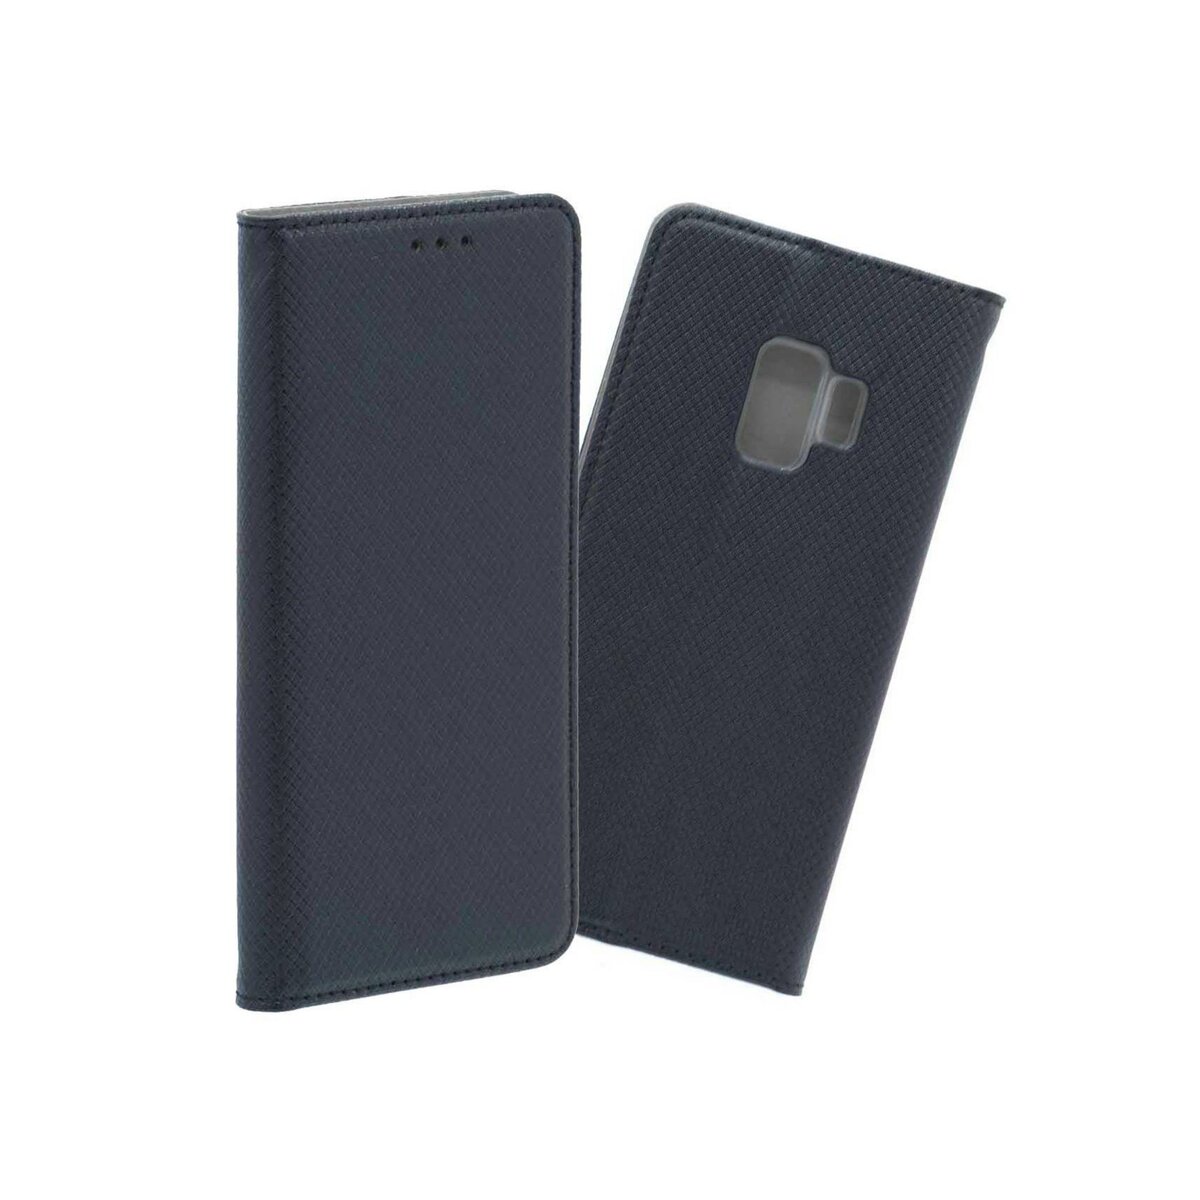 amahousse Housse Galaxy S9 folio noir texturé rabat aimanté